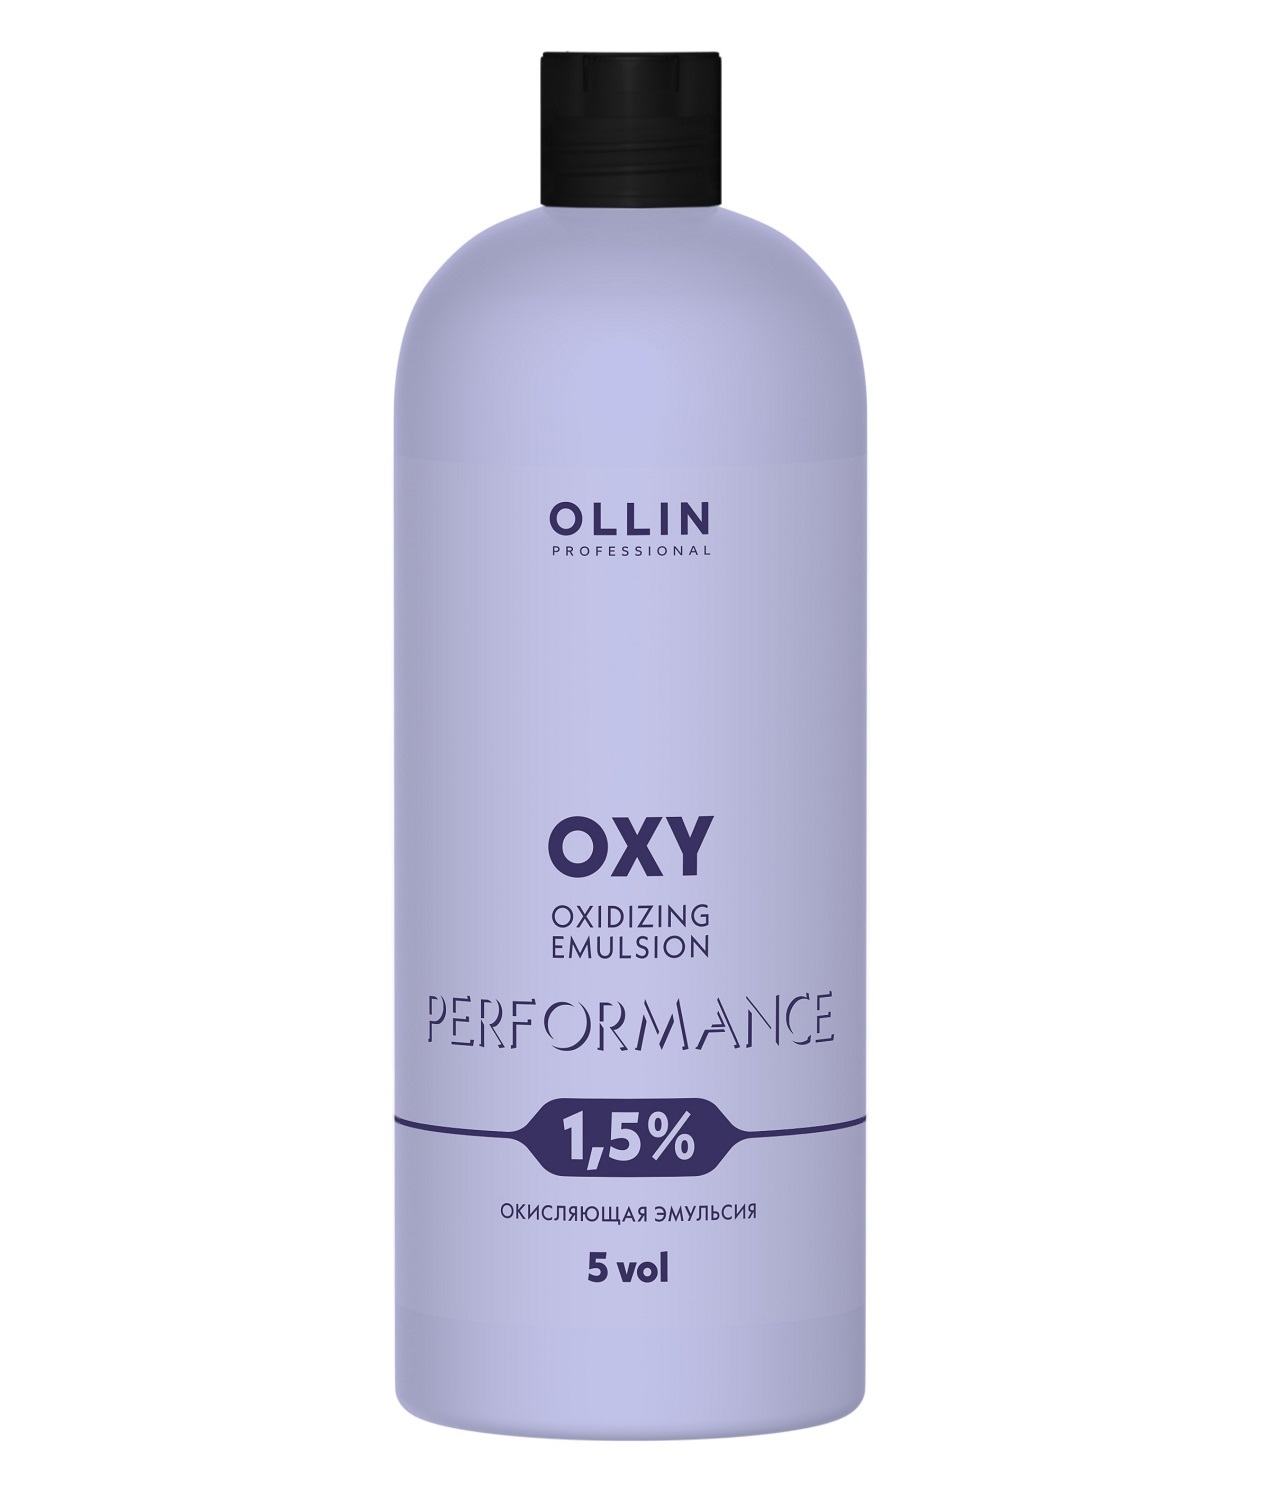 Купить Ollin Professional Окисляющая эмульсия 1, 5% 5 vol, 1000 мл (Ollin Professional, Performance), Россия